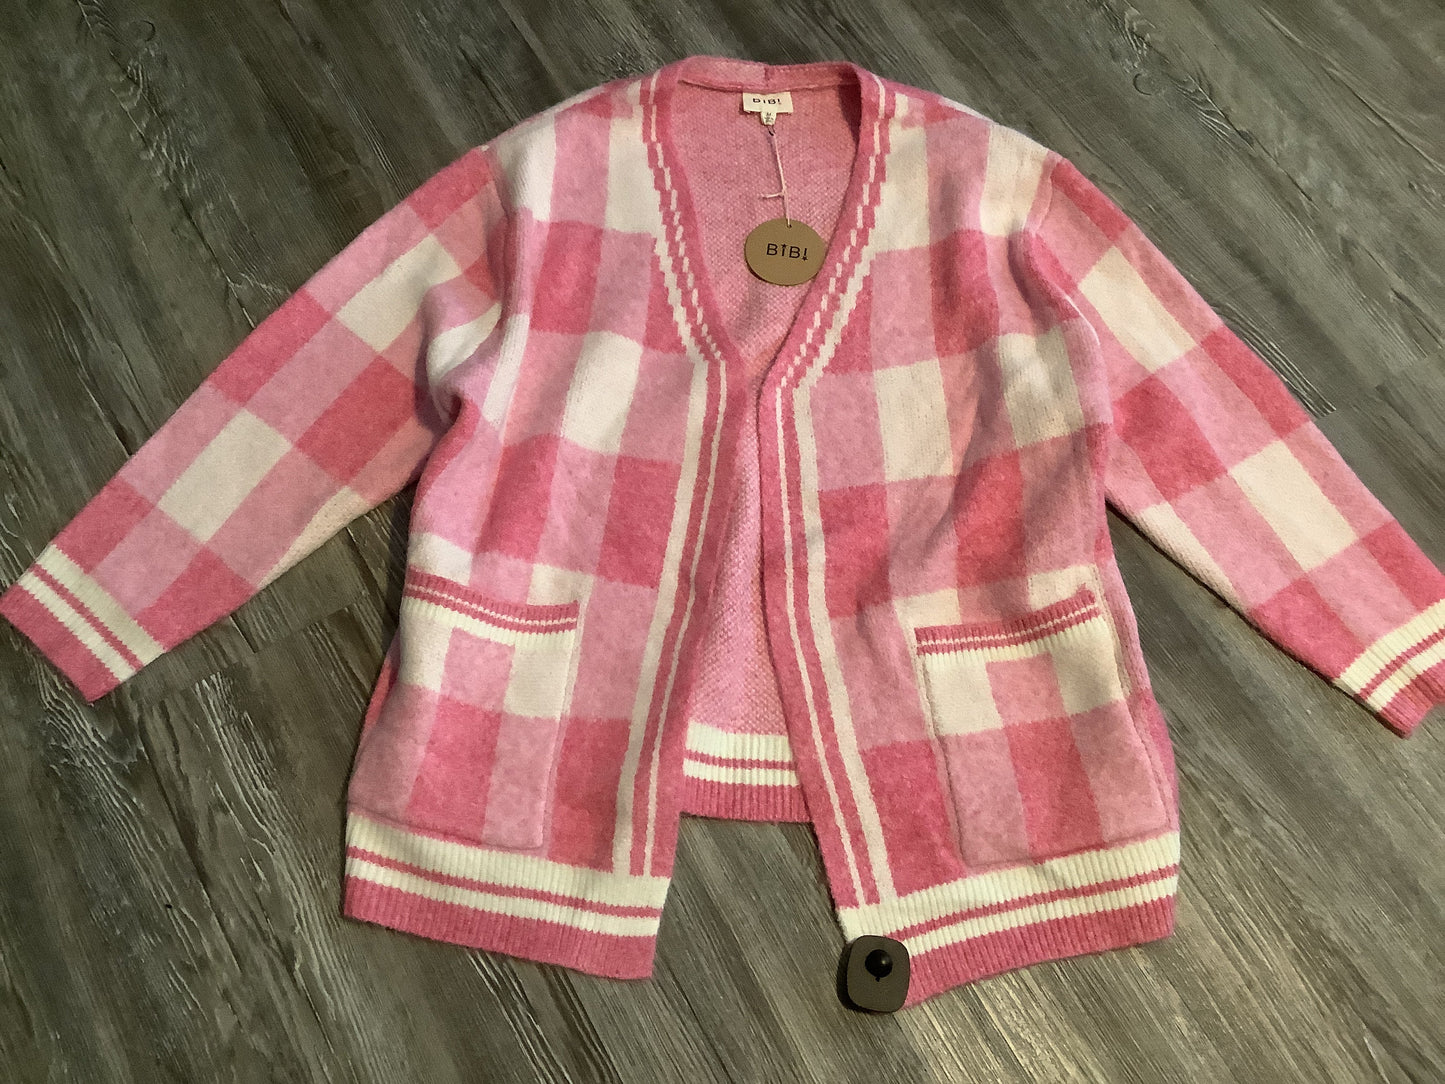 Pink & White Sweater Bibi, Size M